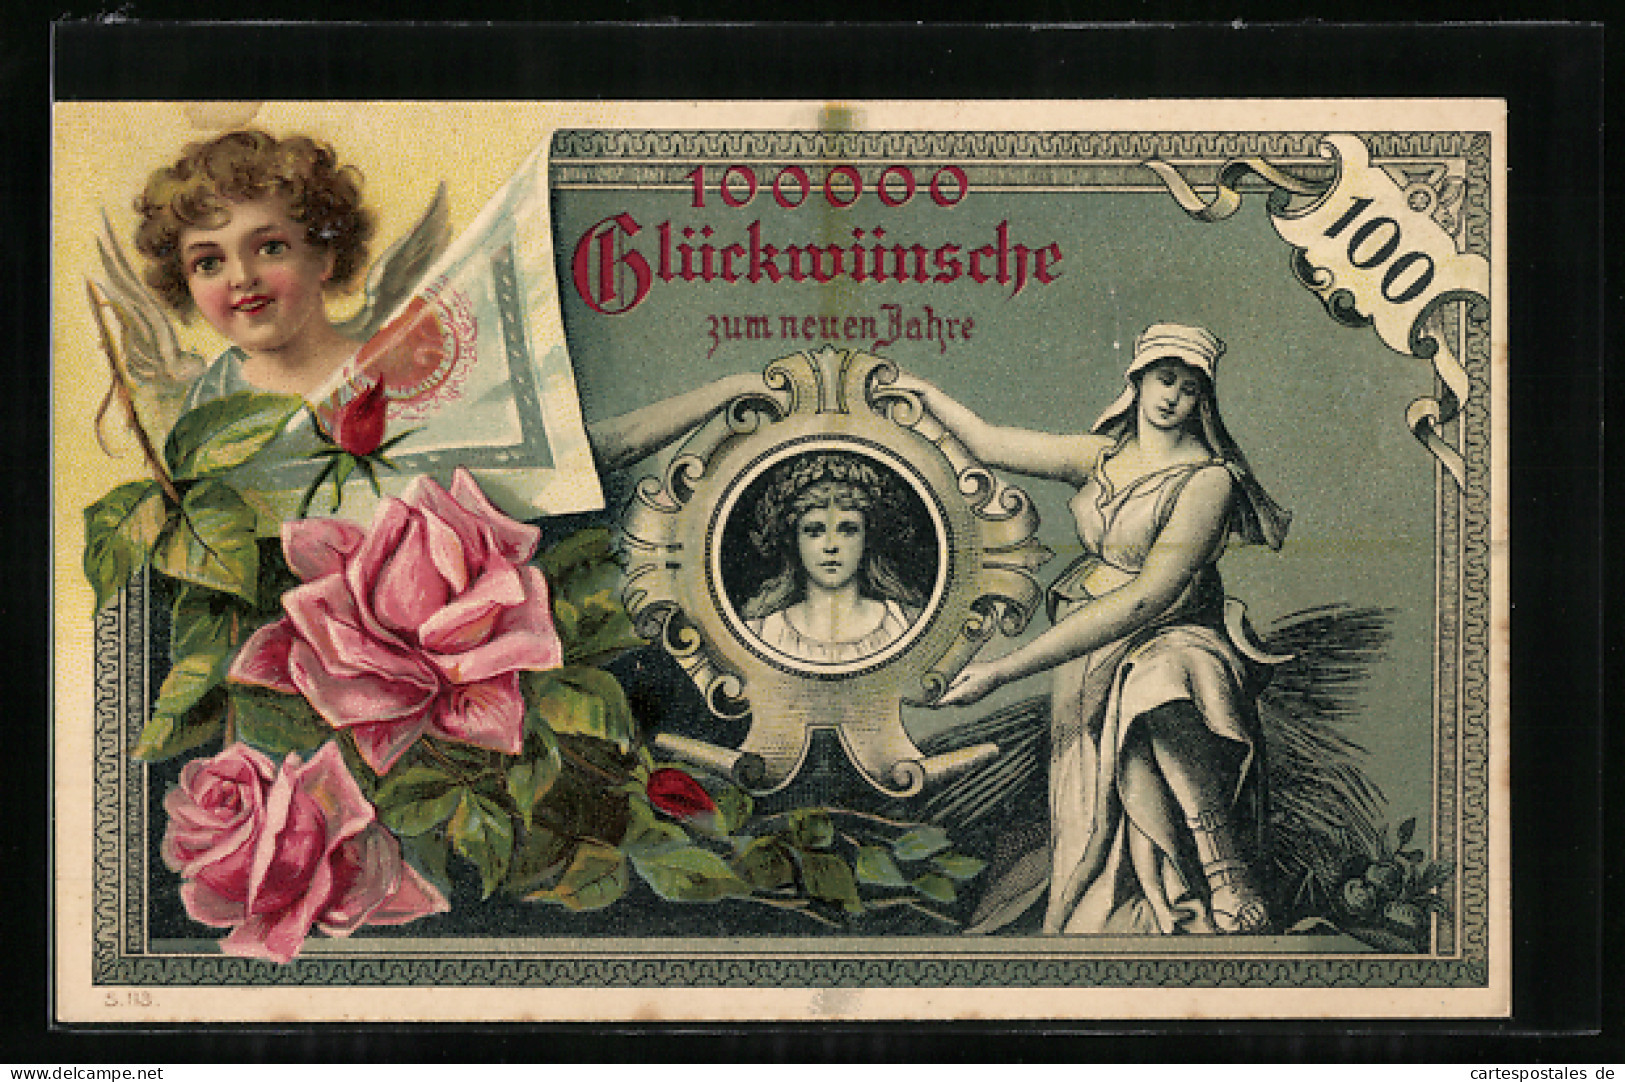 Lithographie Geldmünzen, Putto, Rosen, Porträt, 100000 Glückwünsche  - Münzen (Abb.)